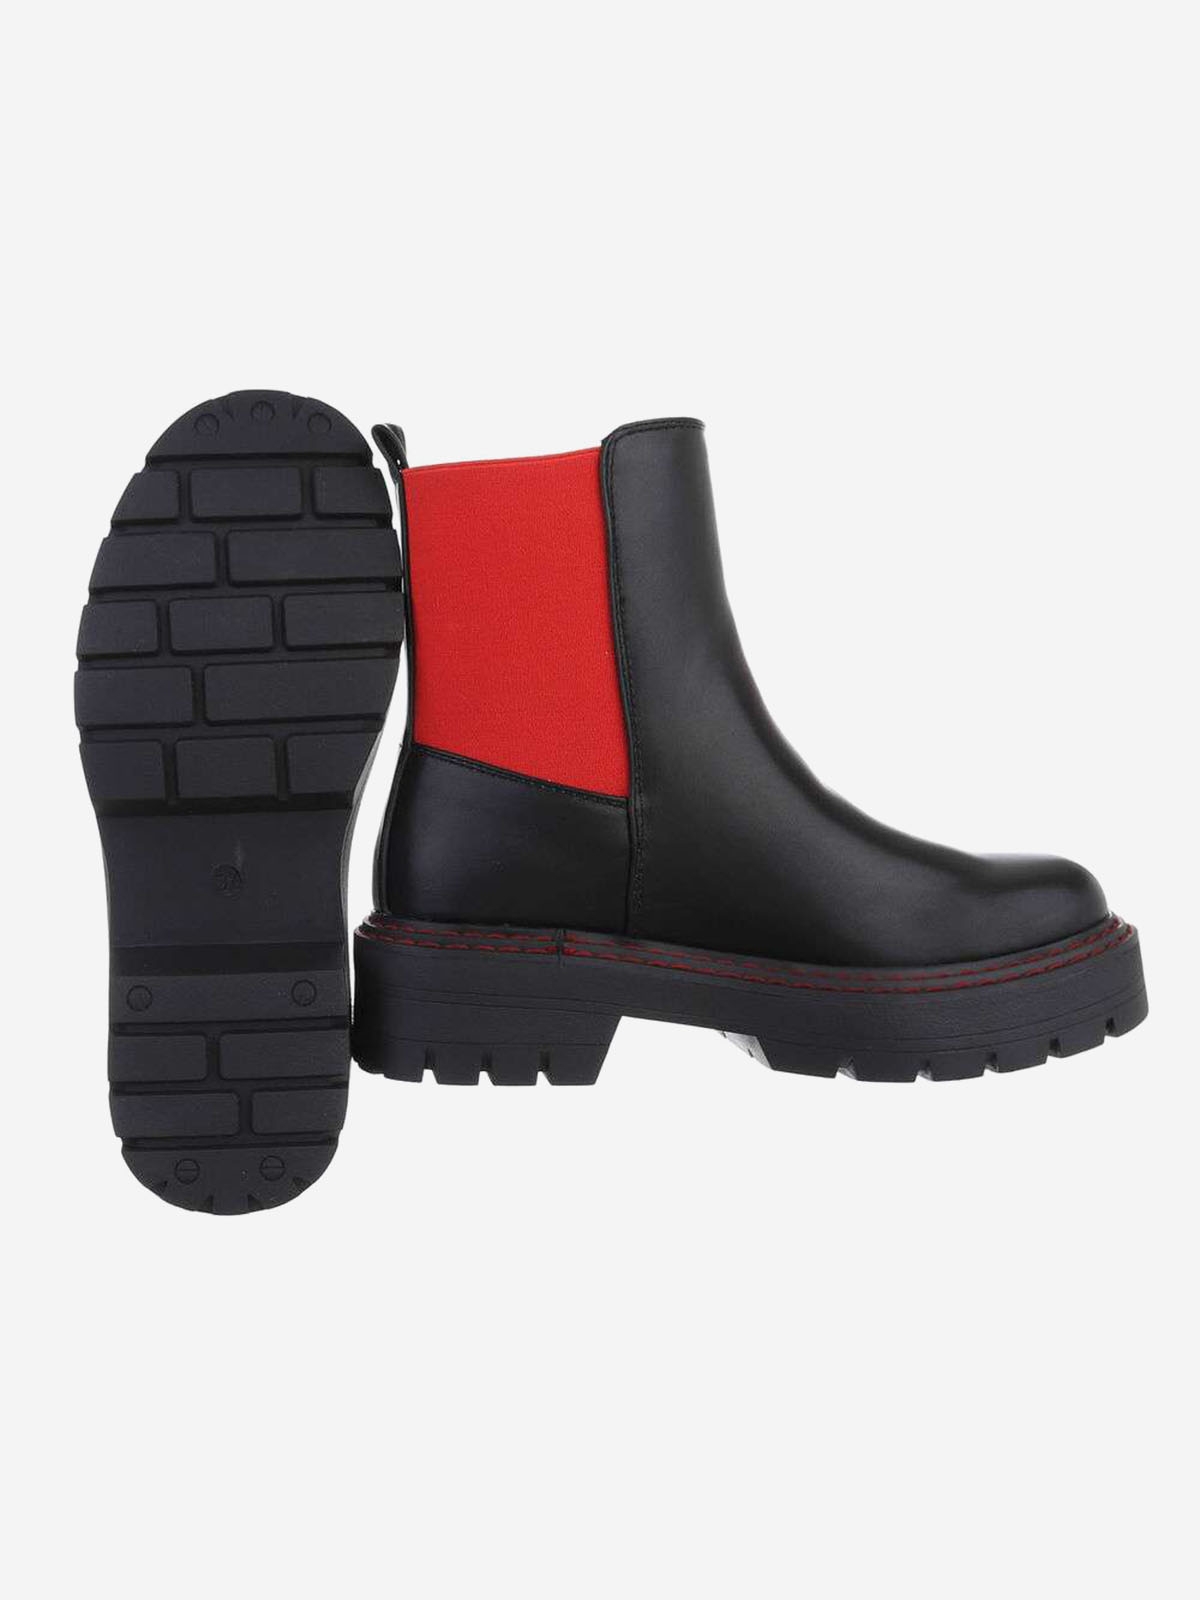 Chelsea stiliaus juodos spalvos moteriški auliniai batai su raudonu akcentu